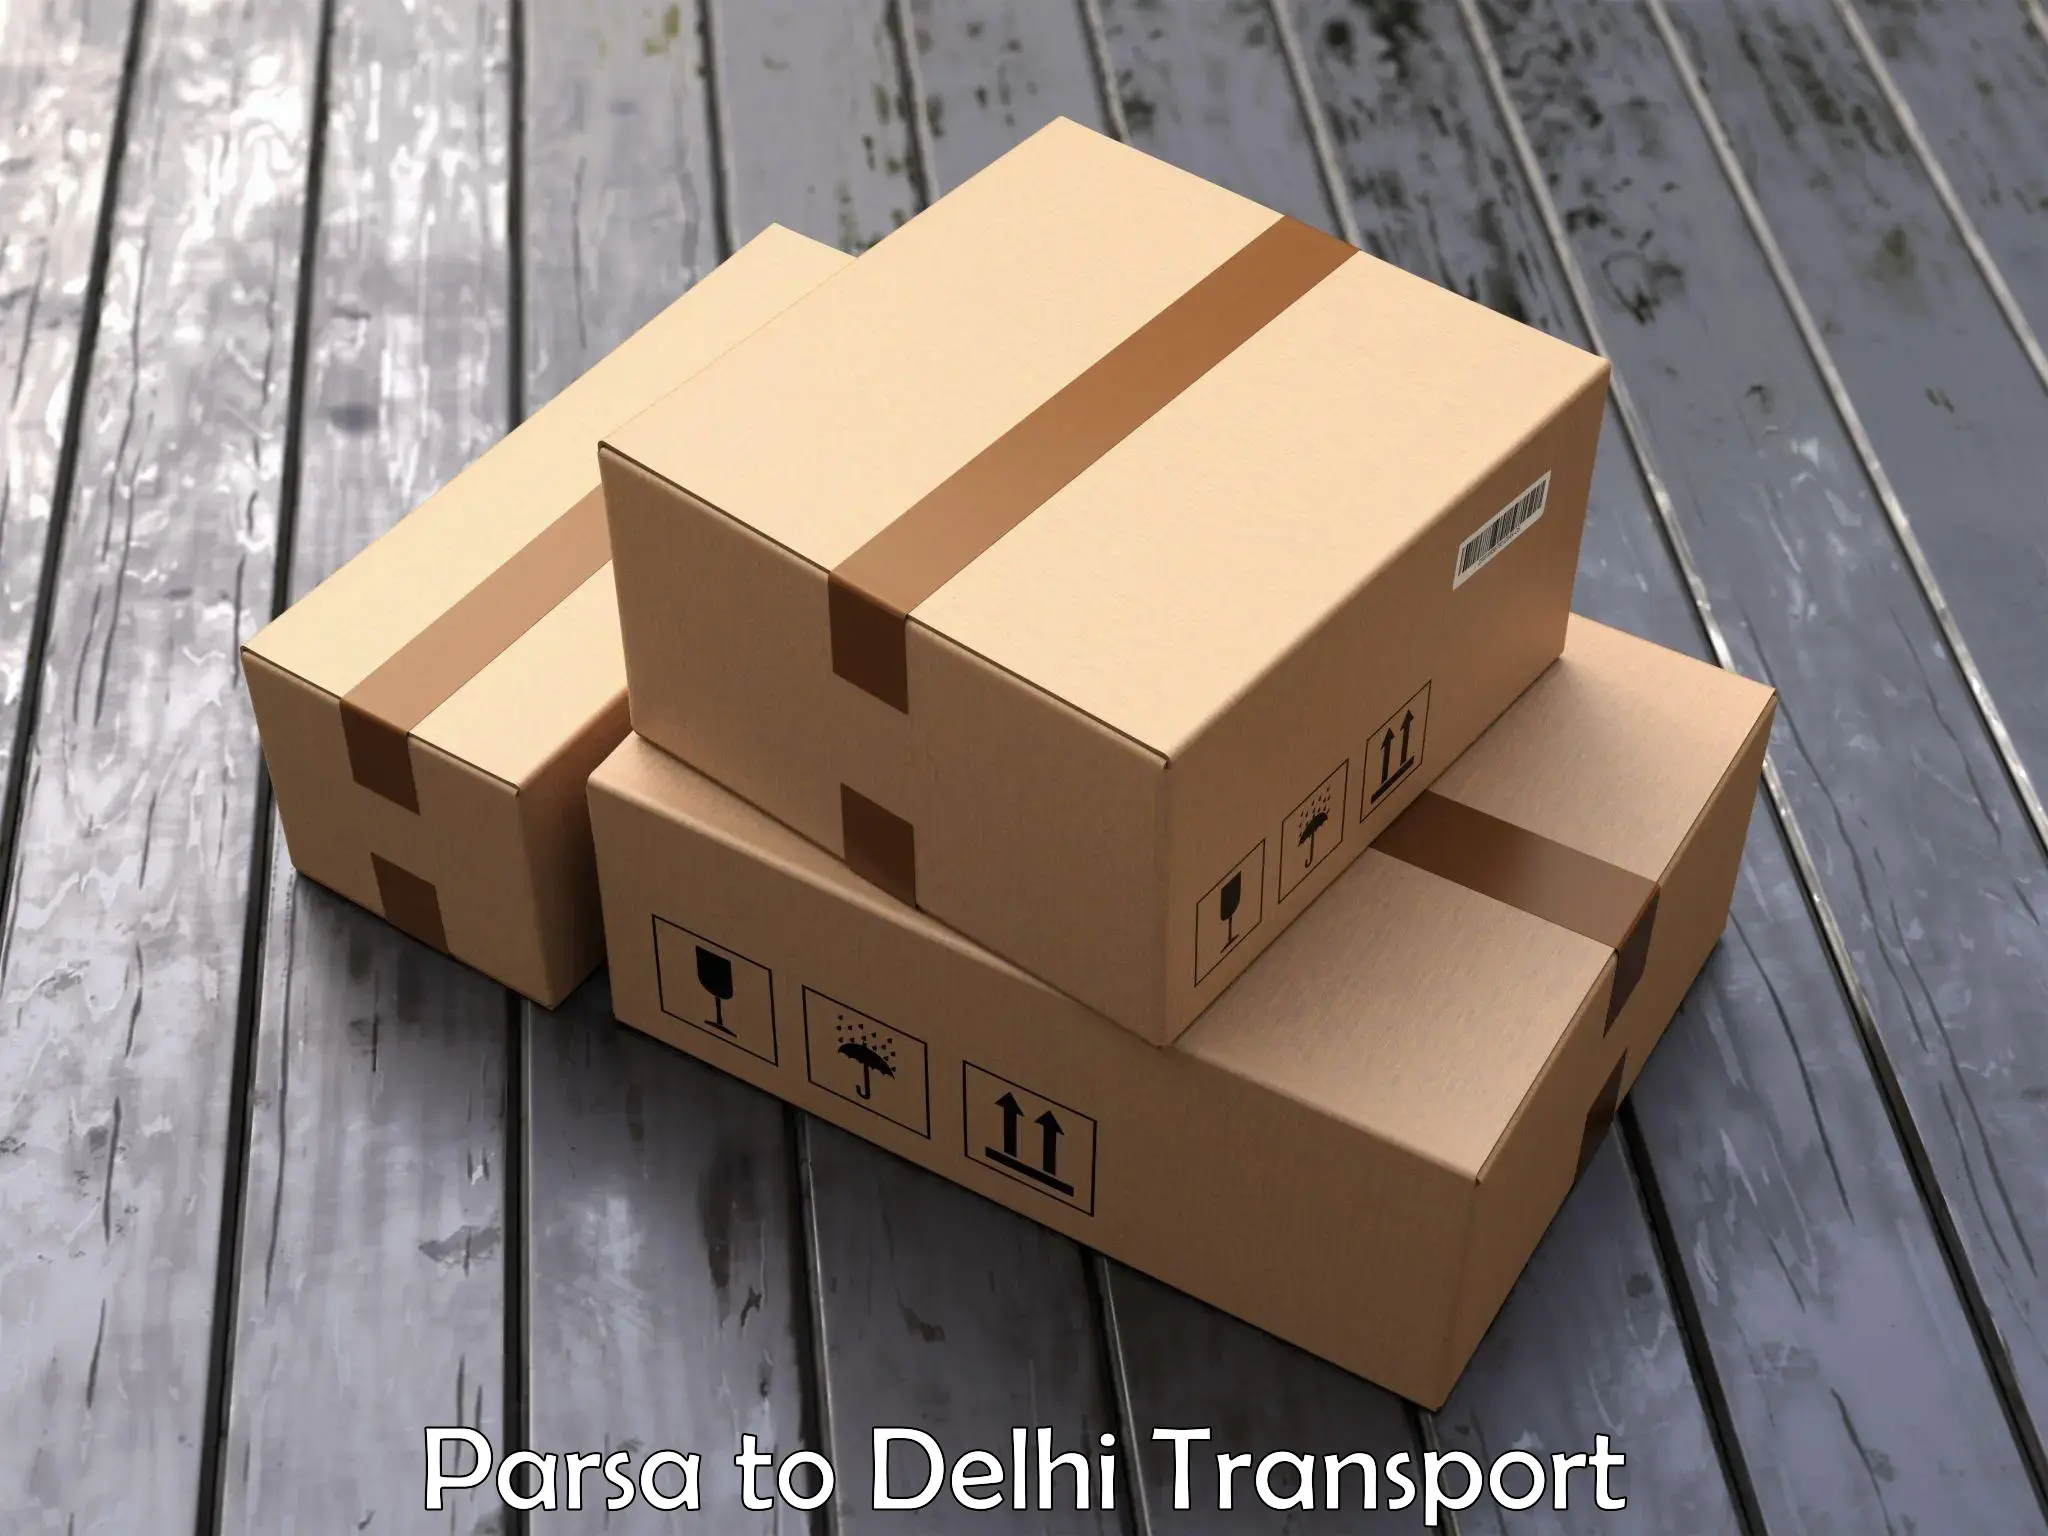 Container transport service Parsa to Burari